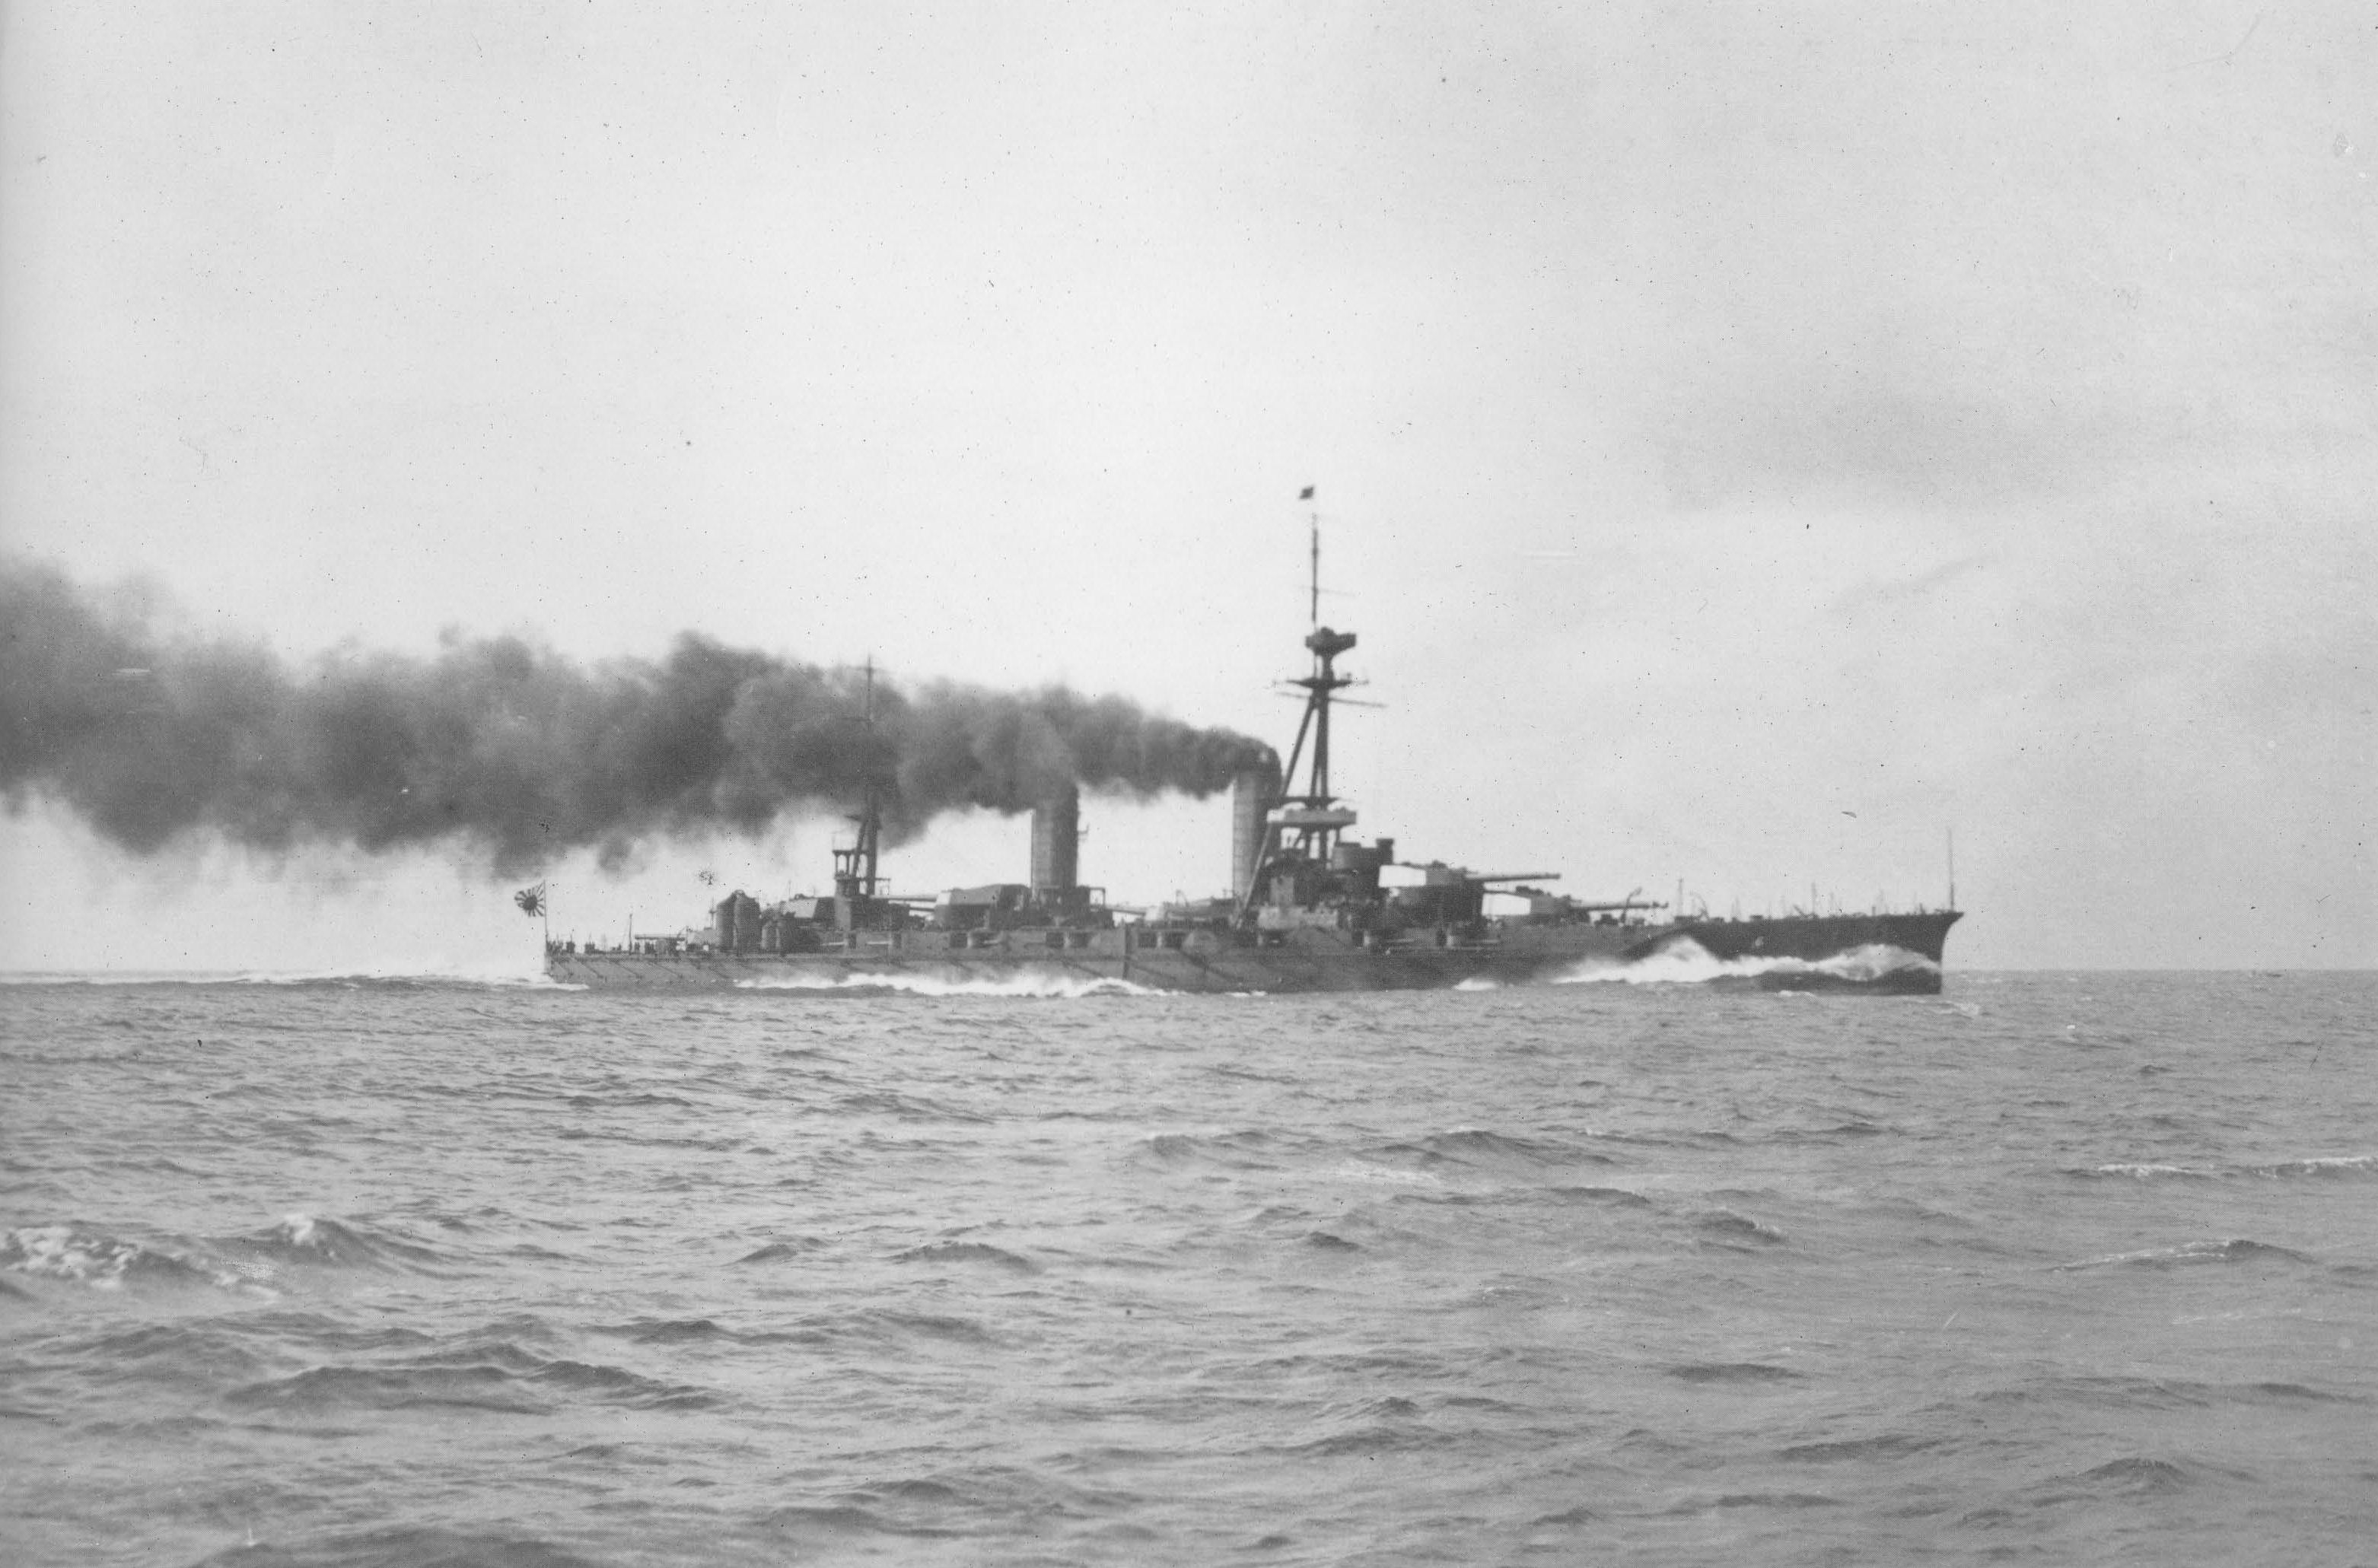 Yamashiro running trials off Tateyama, Japan, 19 Dec 1916